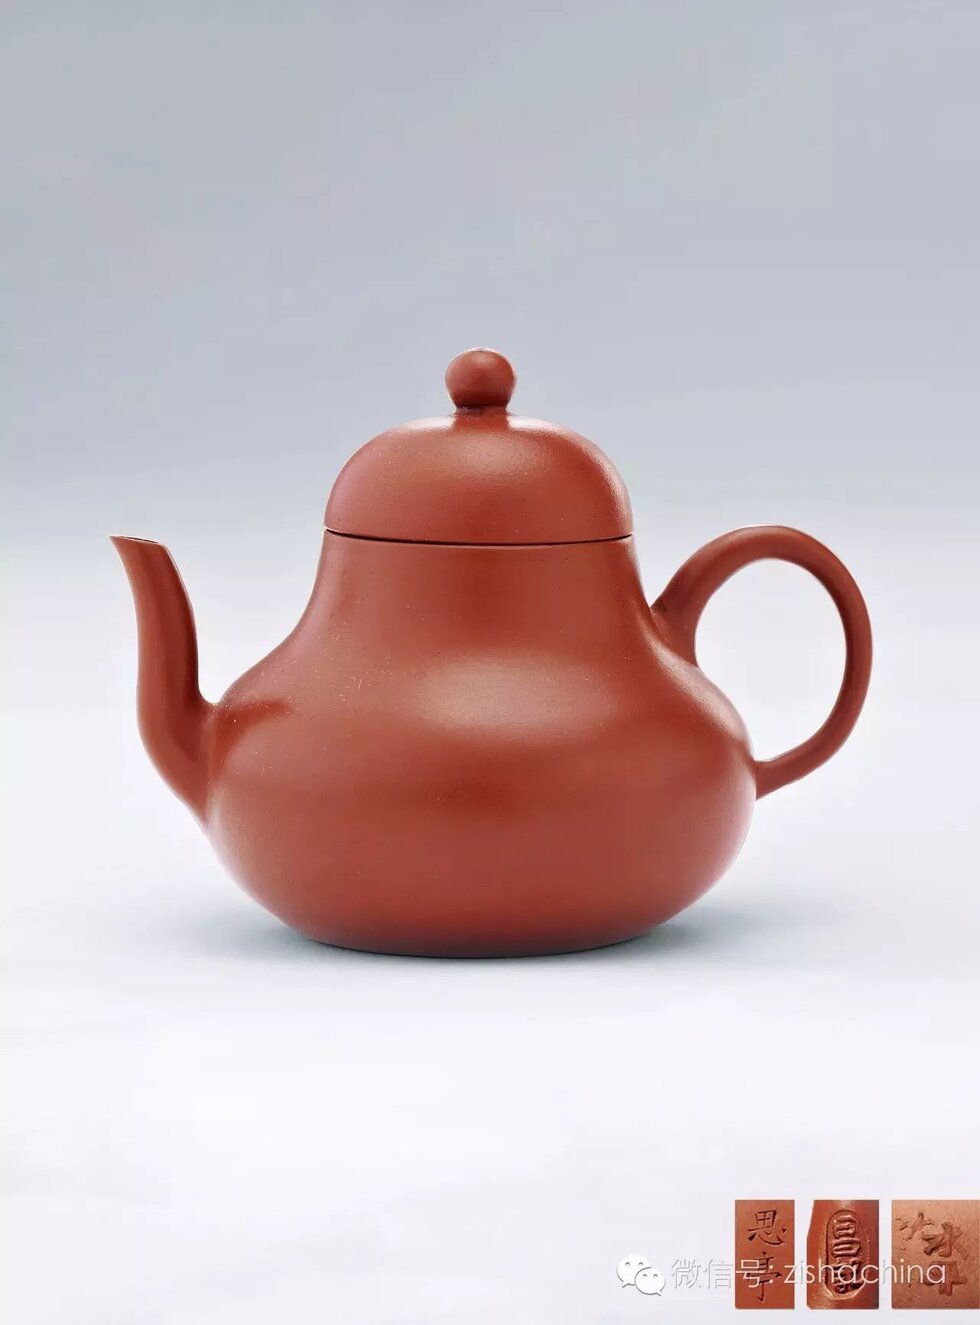 Siting's Teapot